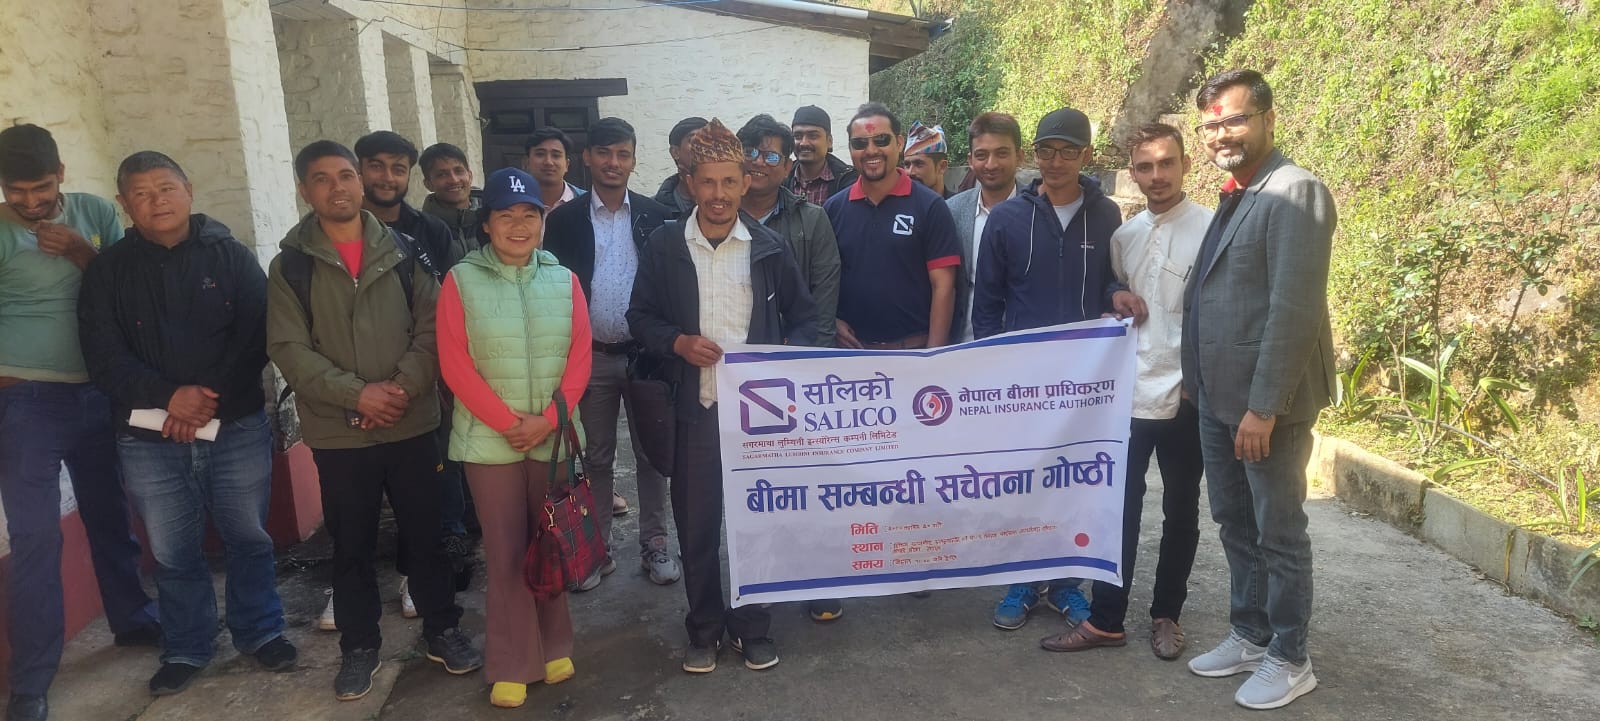 दिक्तेलमा सगरमाथा लुम्बिनी इन्स्योरेन्सको बीमा सचेतना कार्यक्रम सम्पन्न